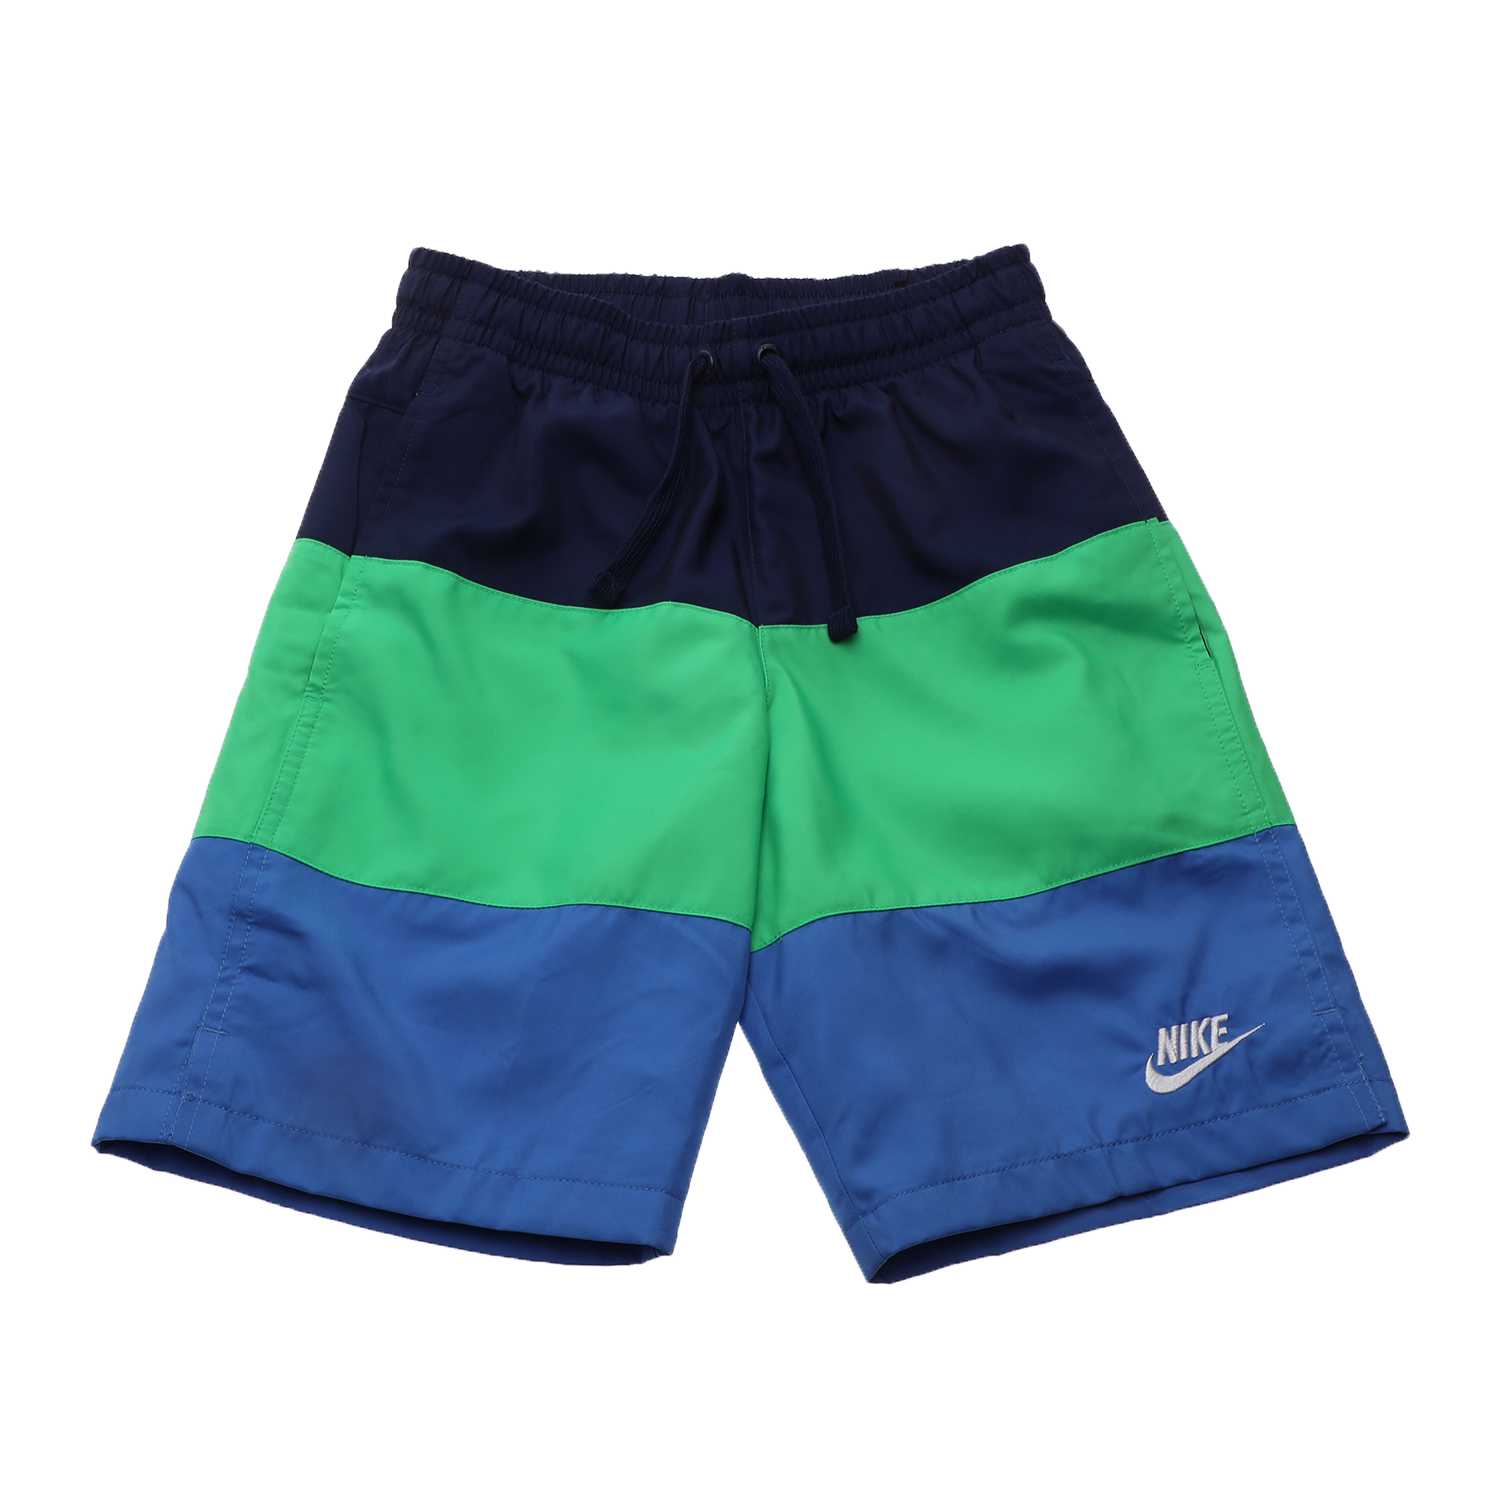 Παιδικά/Boys/Ρούχα/Σορτς-Βερμούδες NIKE - Παιδική αθλητική βερμούδα NIKE SW SHORT WOVEN BLOCK πράσινη-μπλε